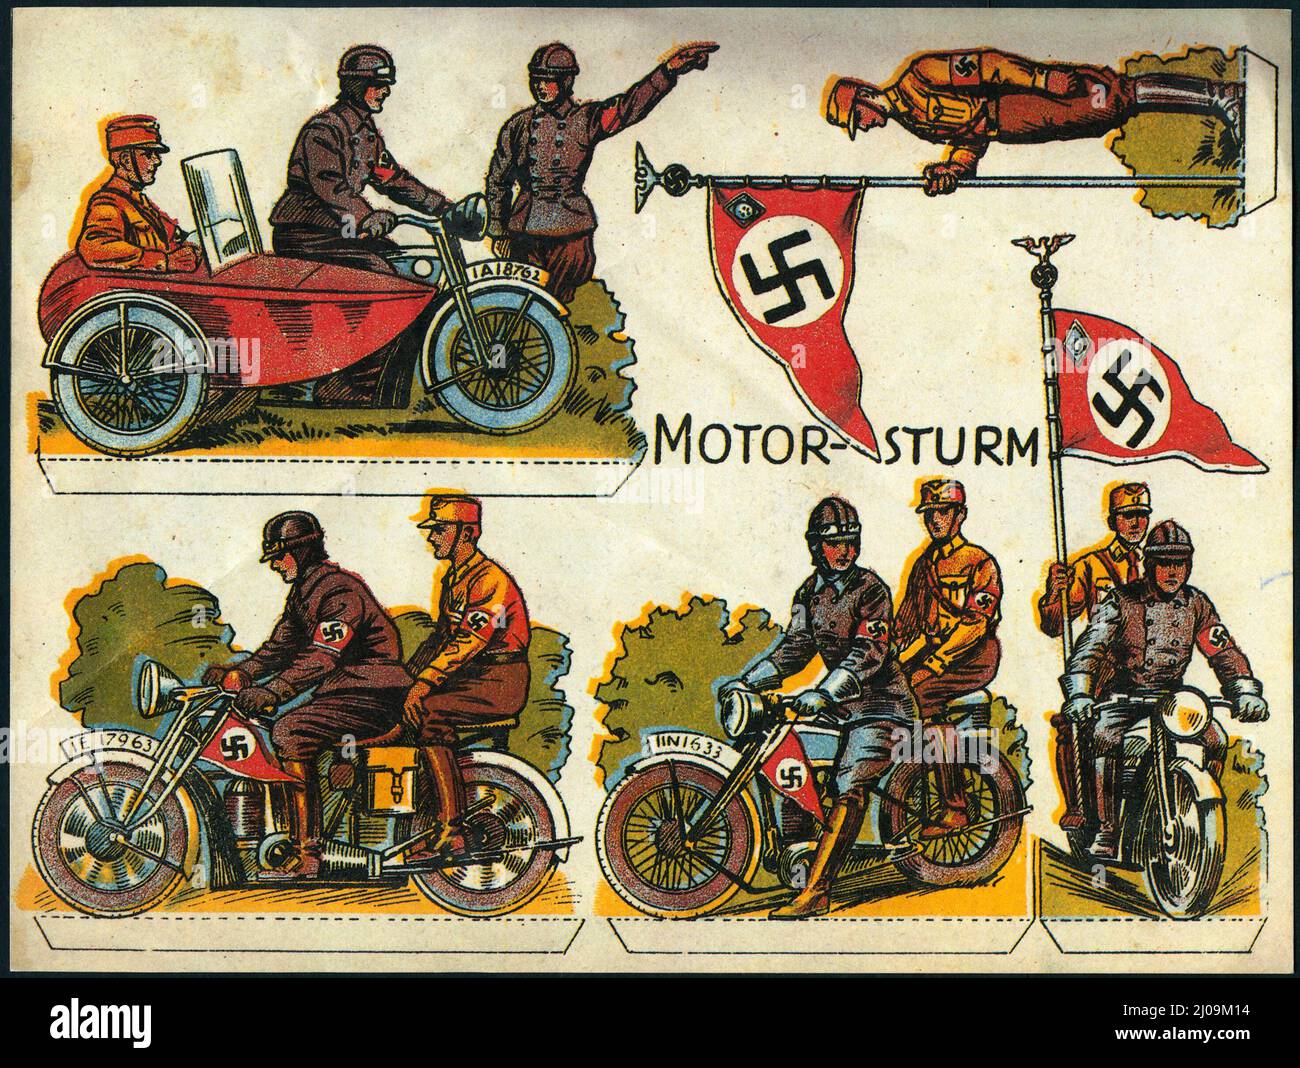 Ausgeschnittene Papierpuppen SA Sturmabteilung Motorraduniformen Flaggen NSDAP Nazi-Partei Propaganda. 1930s. Stockfoto